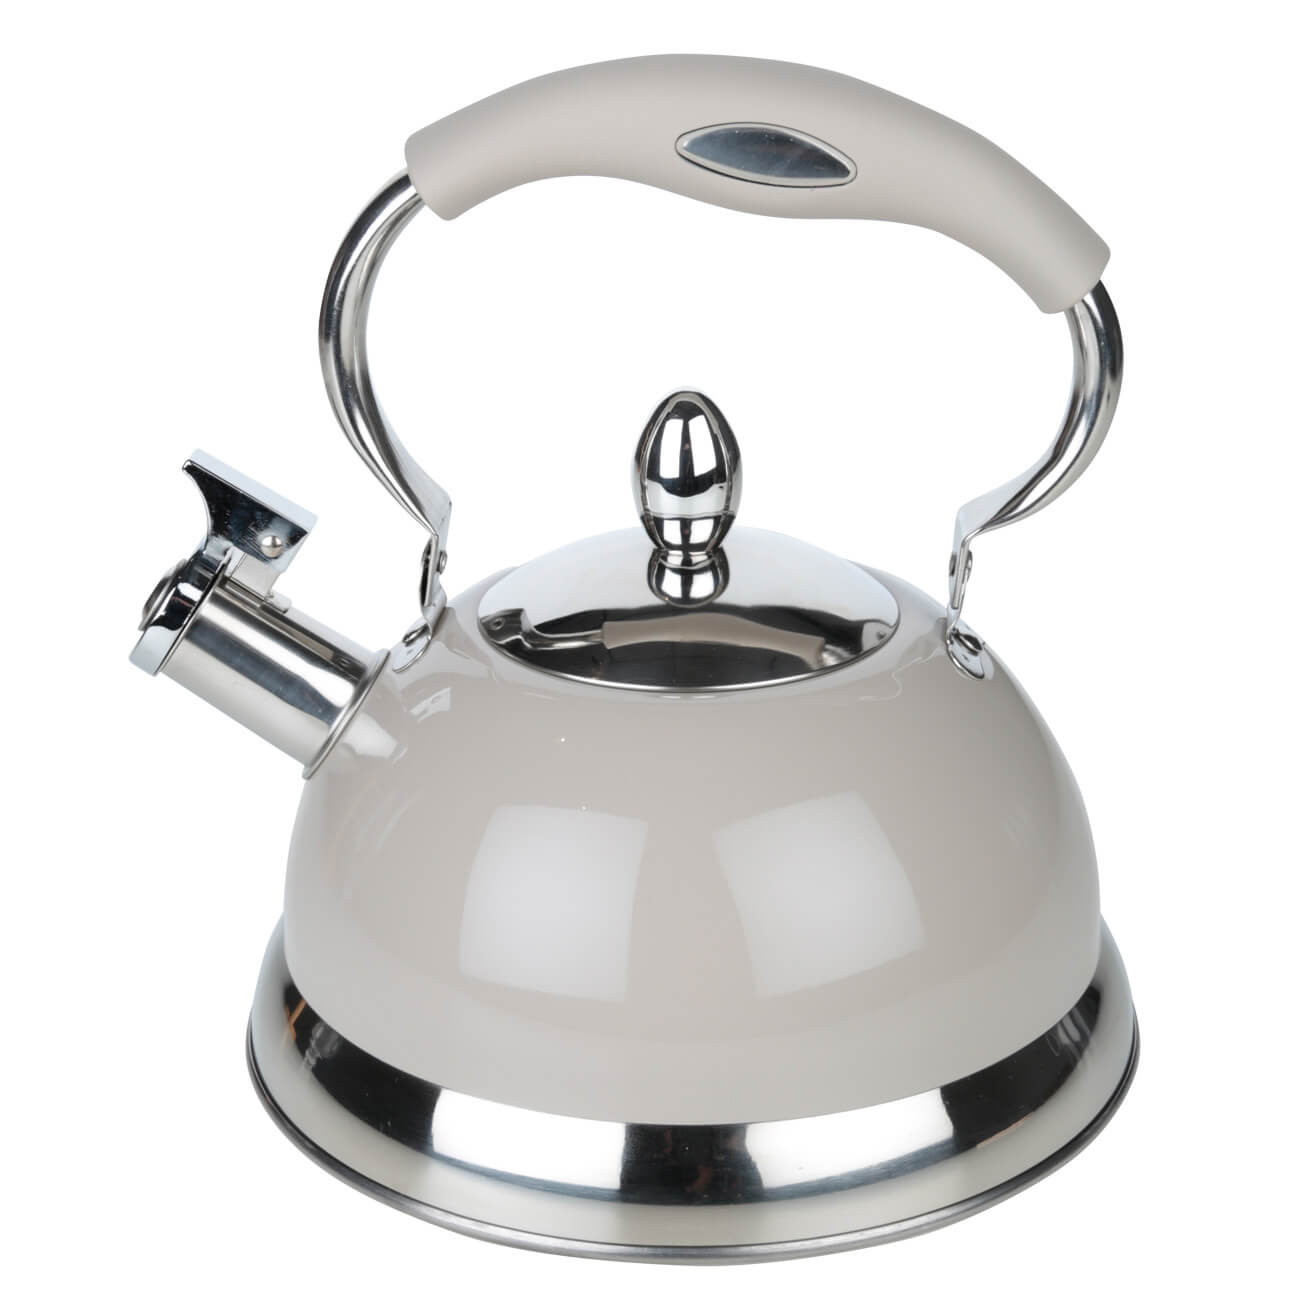 Чайник, 2,7 л, cо свистком, сталь, серый, Whistle чайник сталь эмалированное покрытие 2 2 л со свистком agness charm индукция 934 603